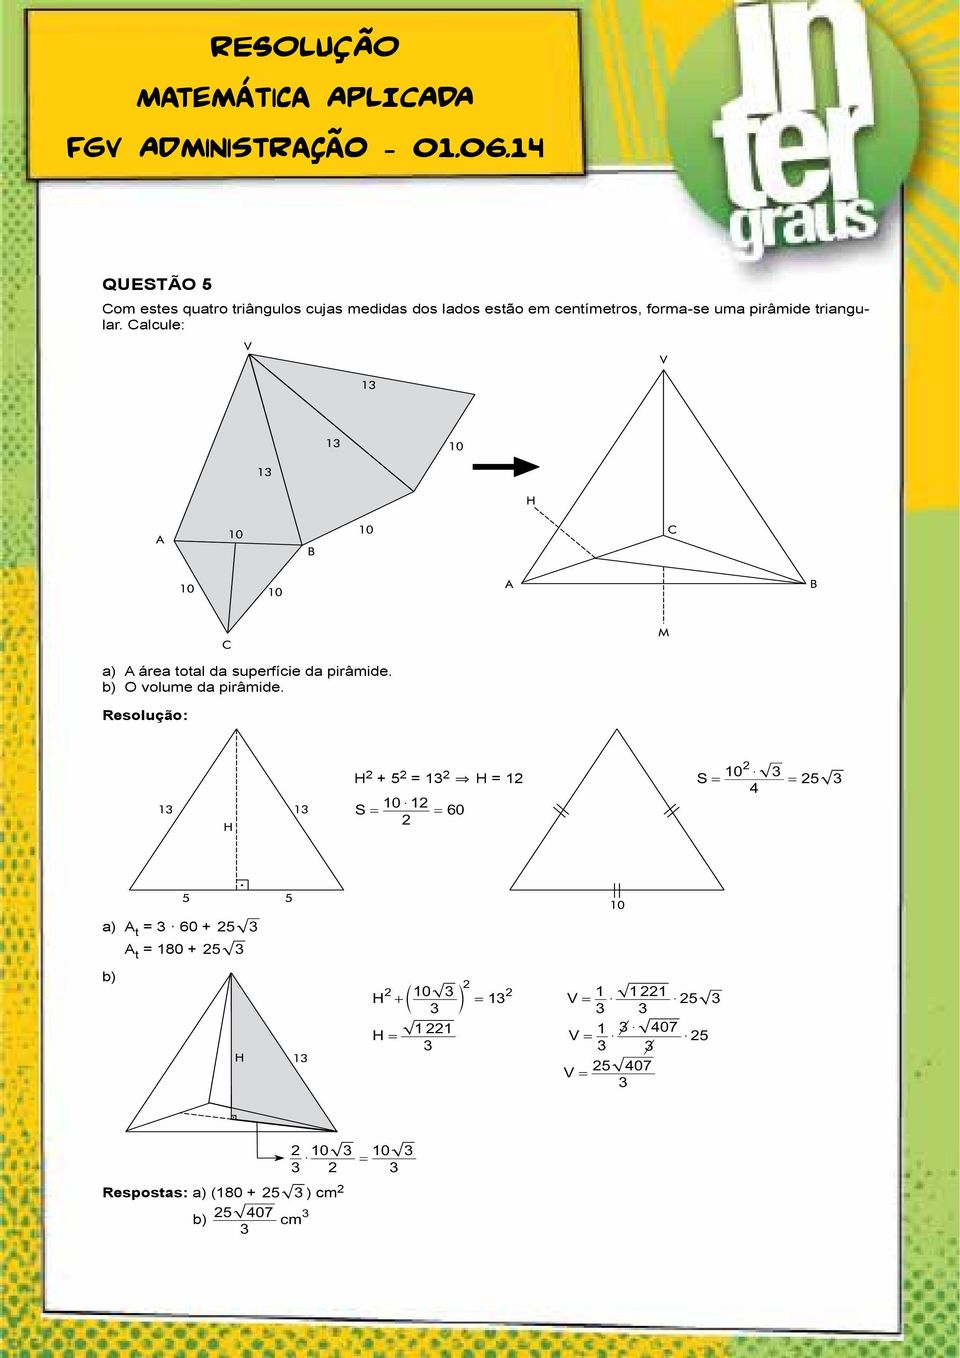 uma pirâmide triangular. Calcule: a) A área total da superfície da pirâmide.